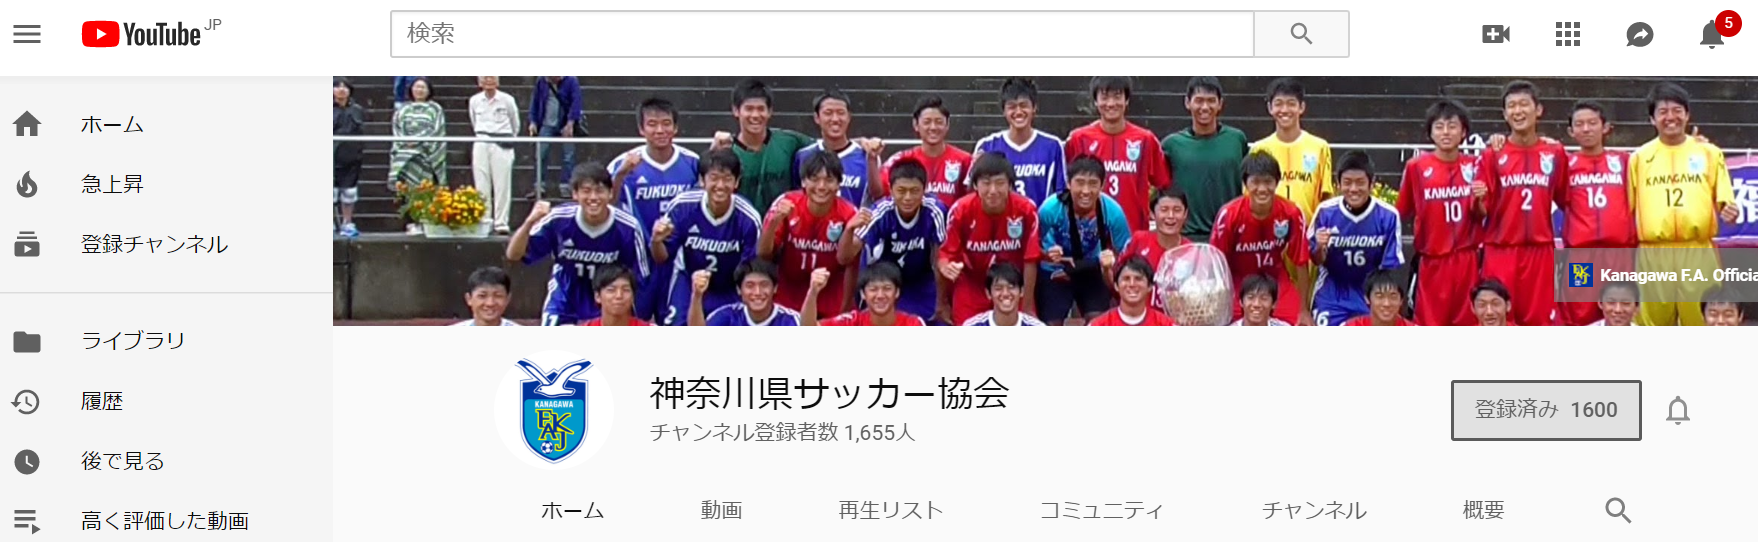 神奈川県サッカー協会公式YouTube